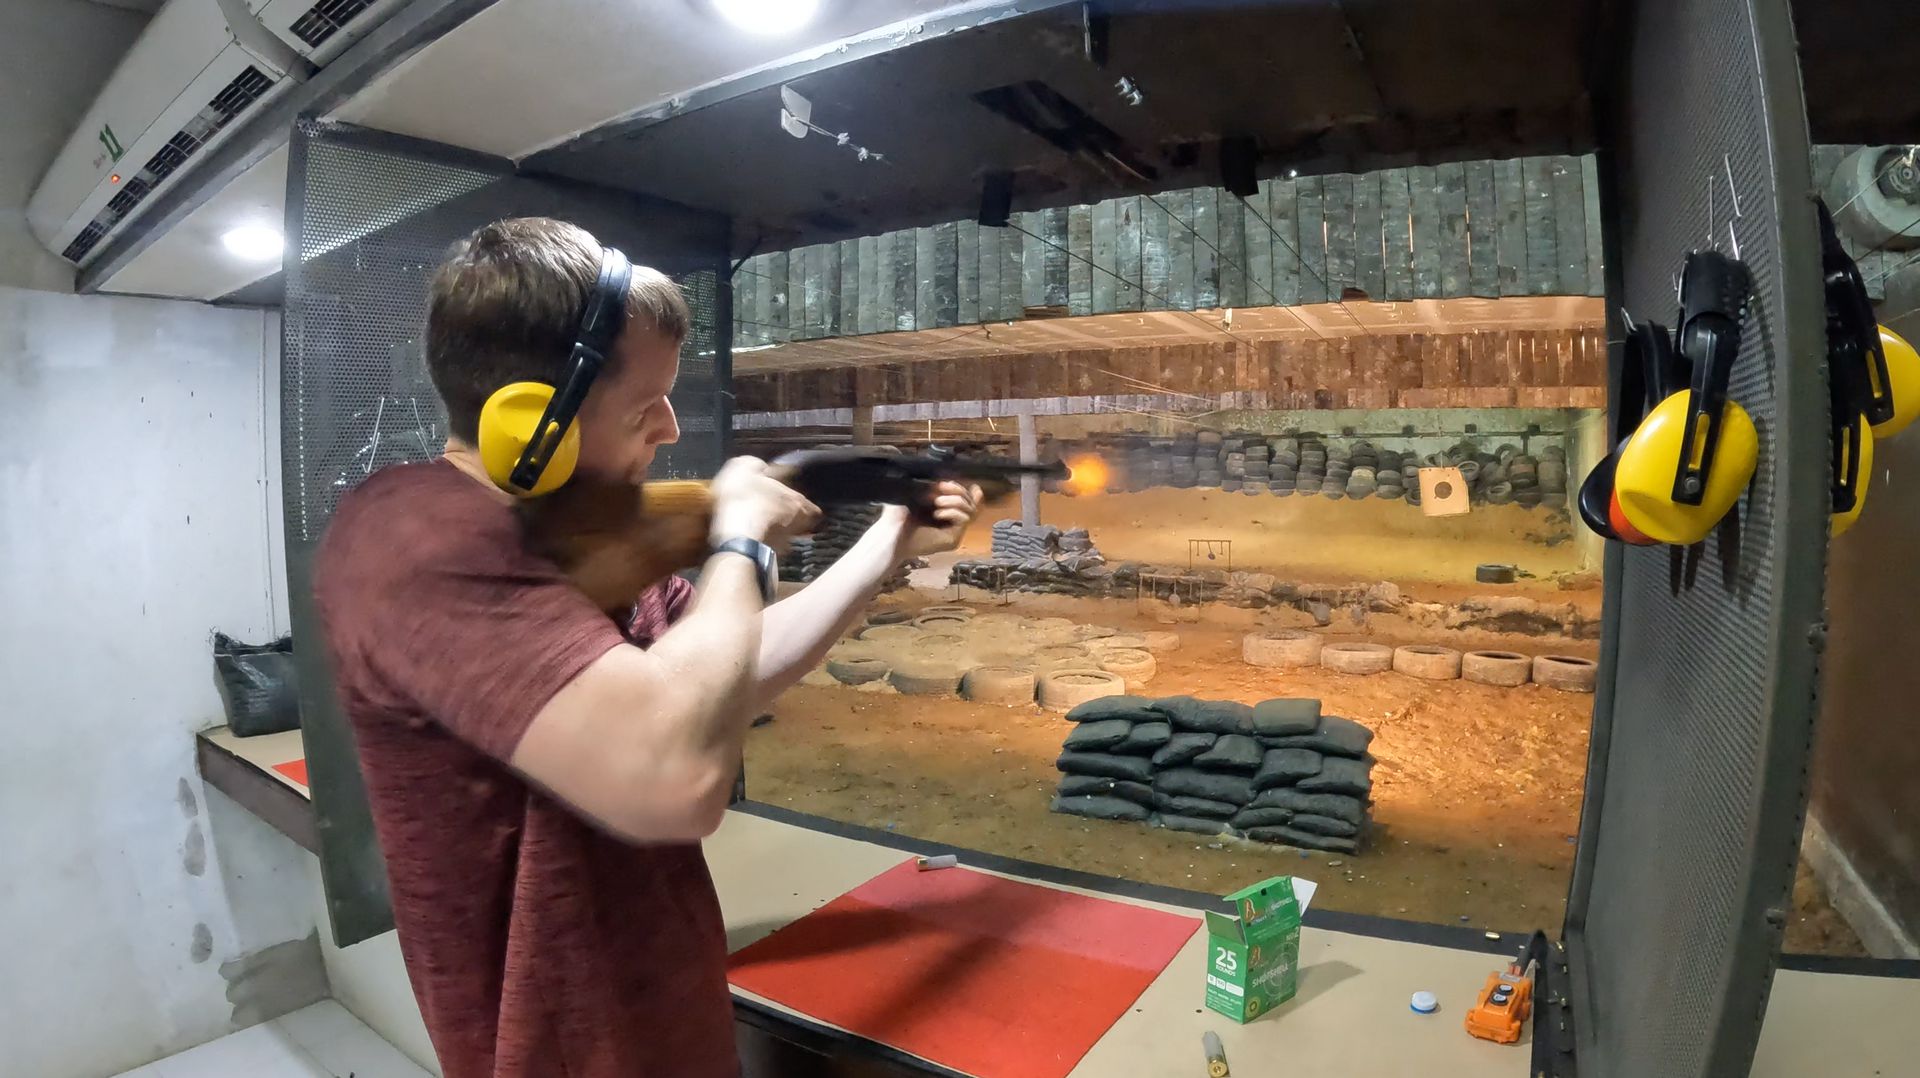 David Simpson shooting a target at shooting range in Thailand. Shotguns, markets and temples in Bangkok